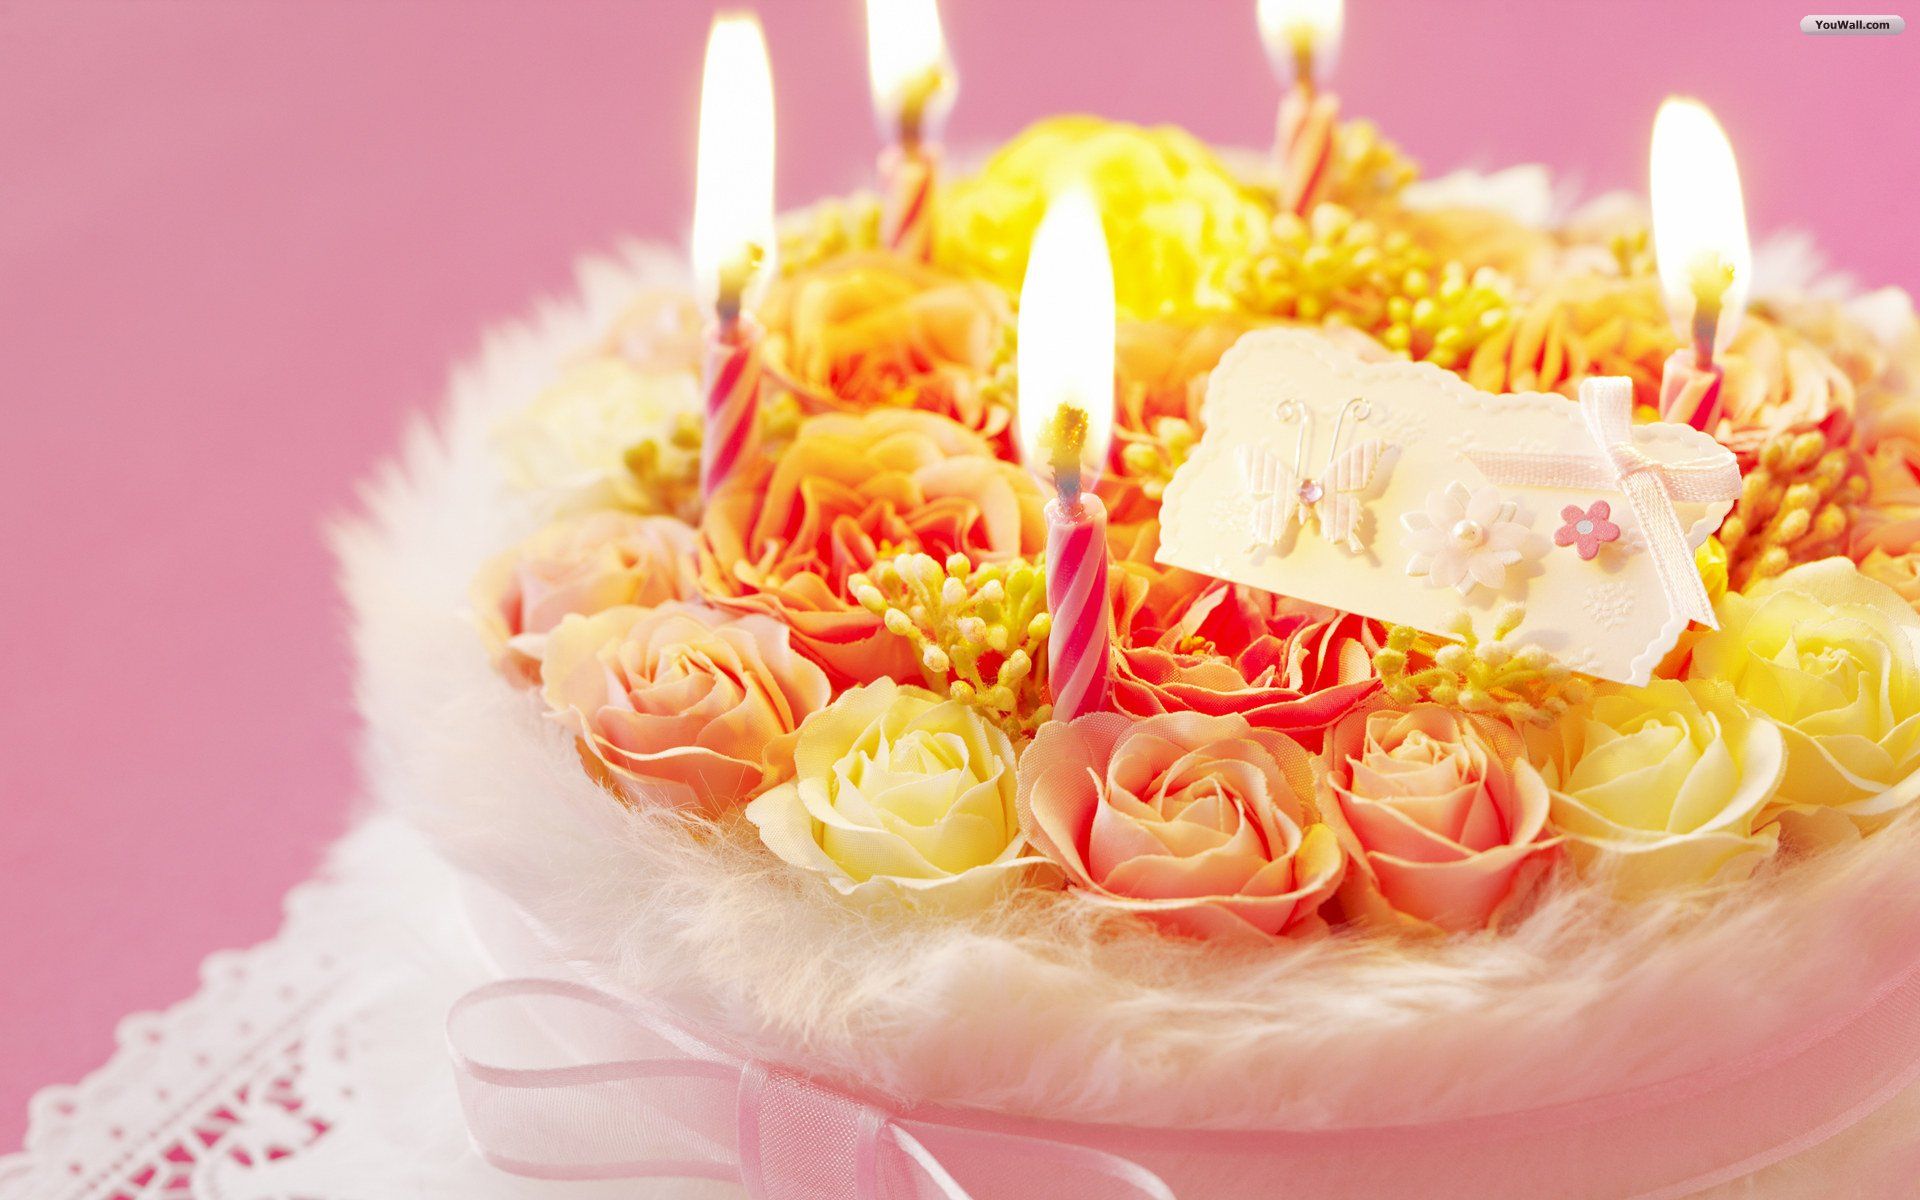 کیک تولد به شکل گلگلی زرد نارنجی مختص استوری تبریک تولد 